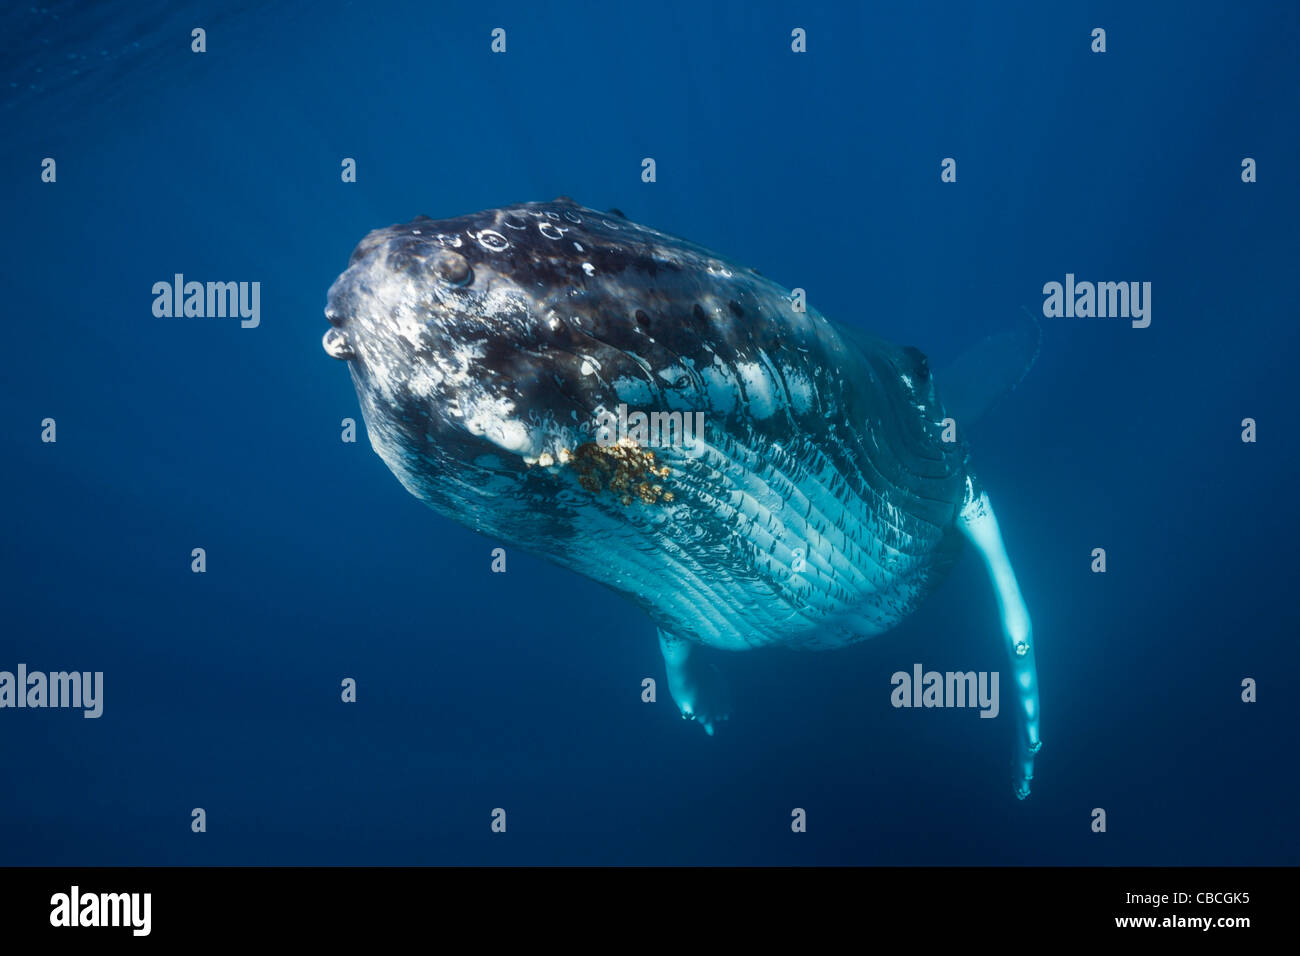 La ballena jorobada, Megaptera novaeangliae, Mar Caribe Dominica Foto de stock